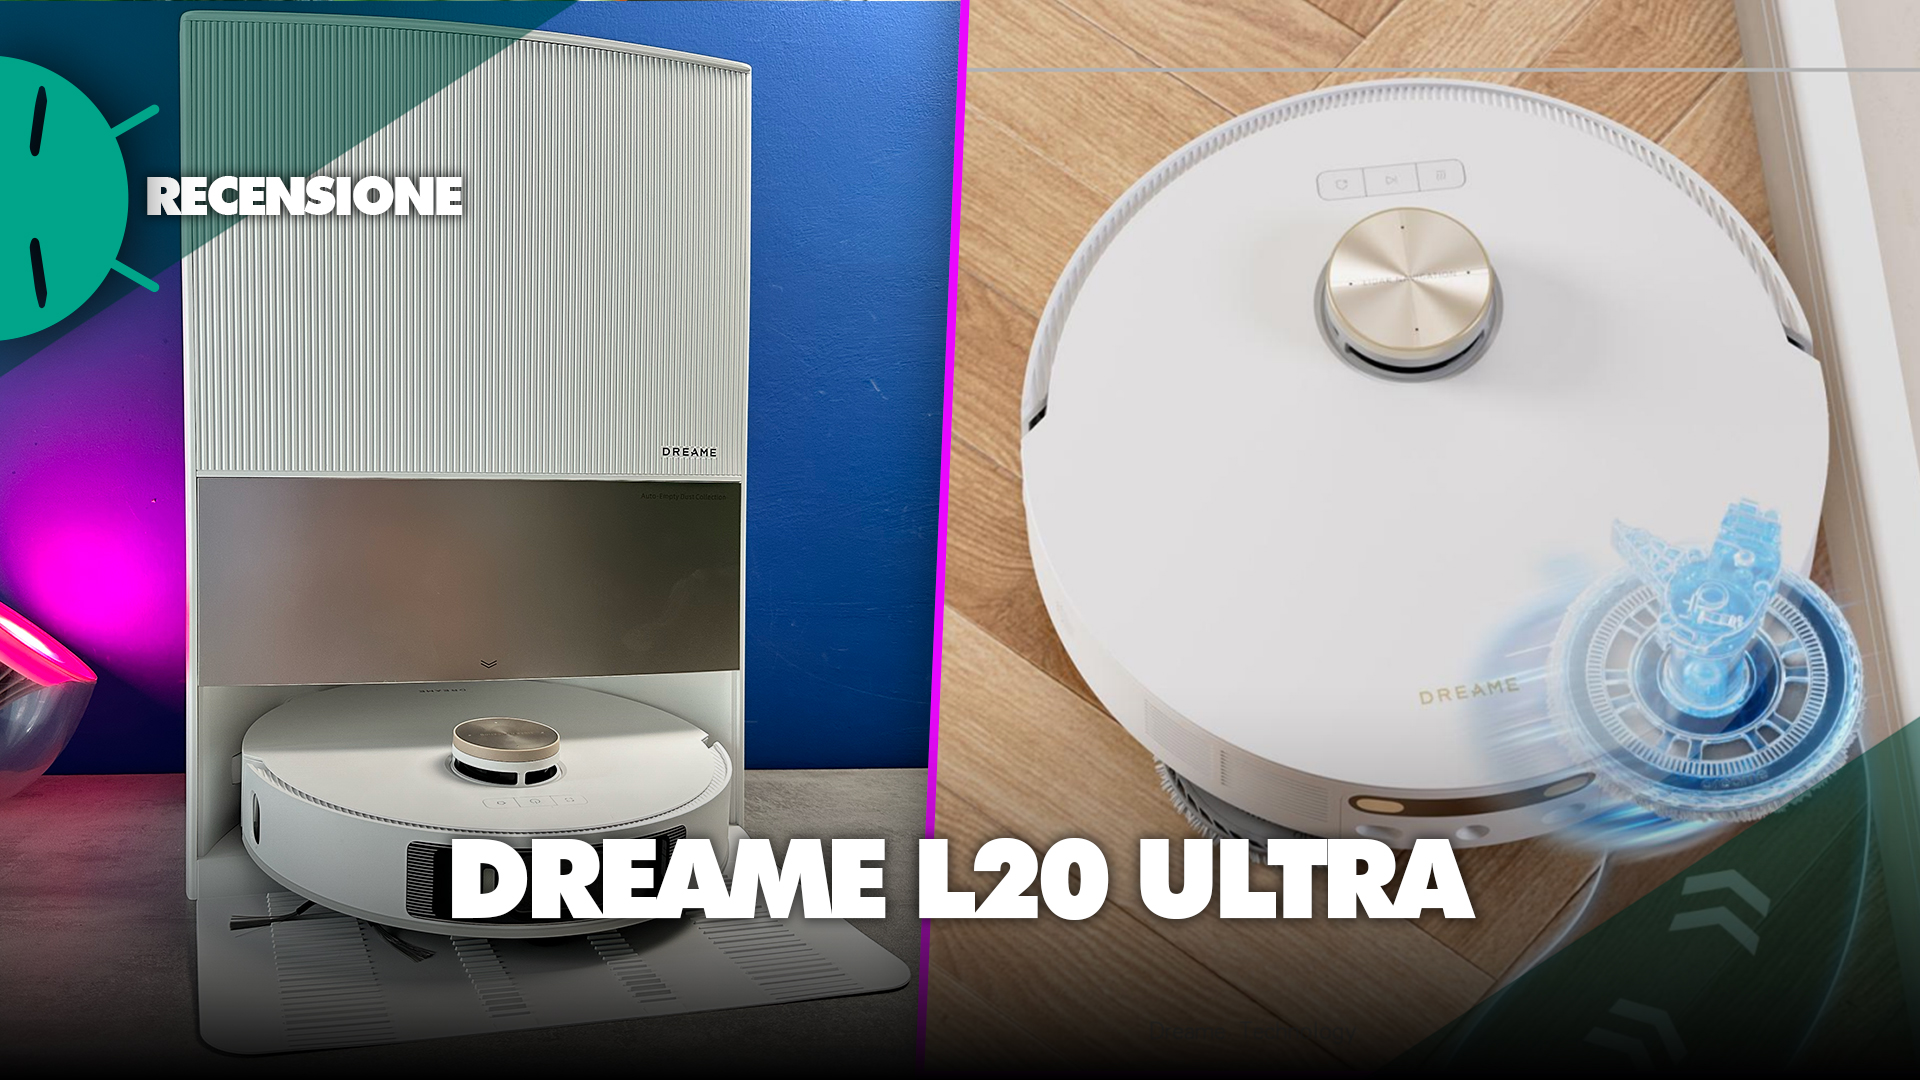 Dreame L10 Ultra : nous avons testé le robot aspirateur laveur